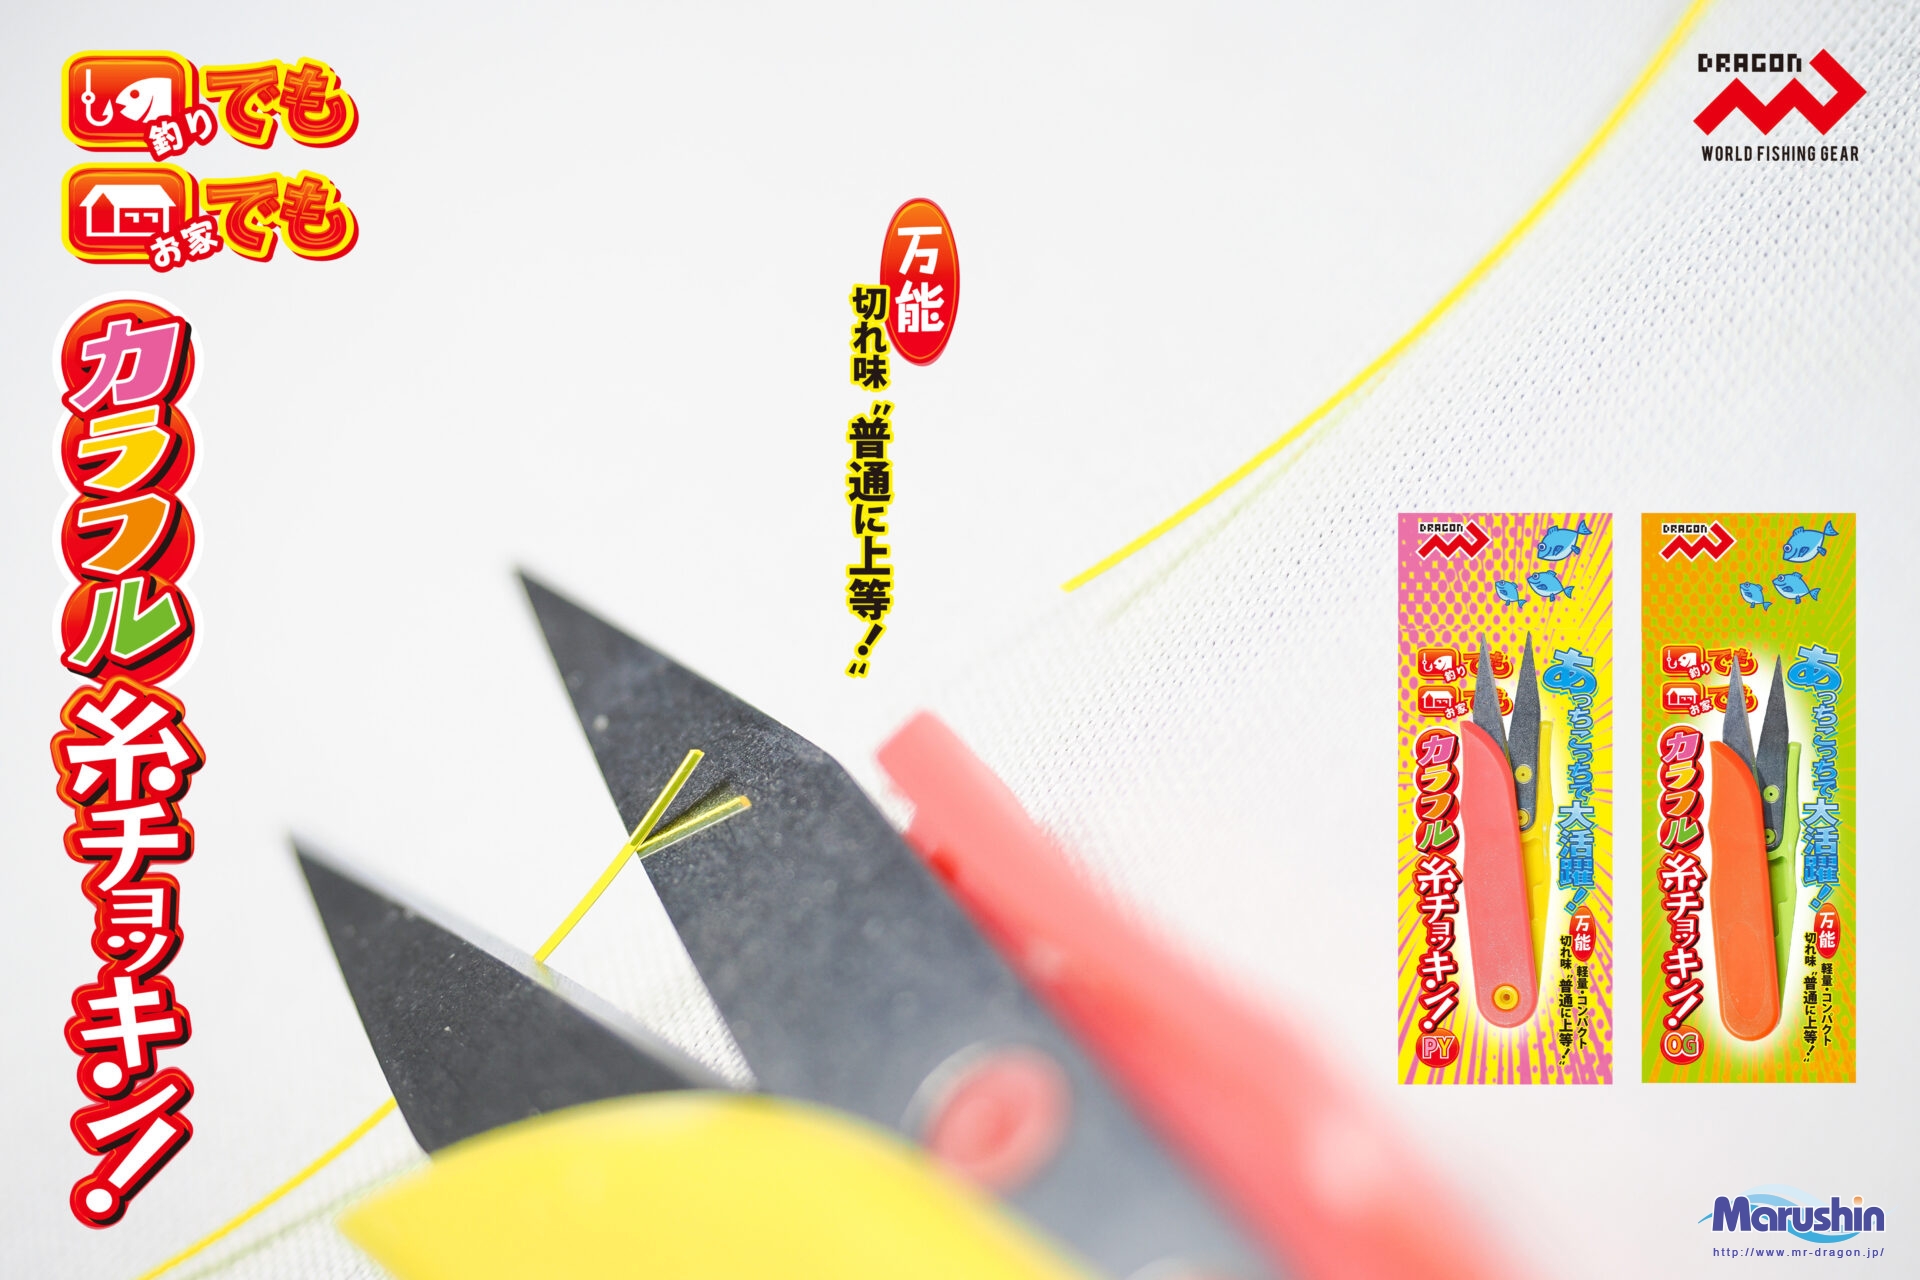 カラフル糸チョッキン! 2色(ピンクイエロー・オレンジグリーン)イメージ画像